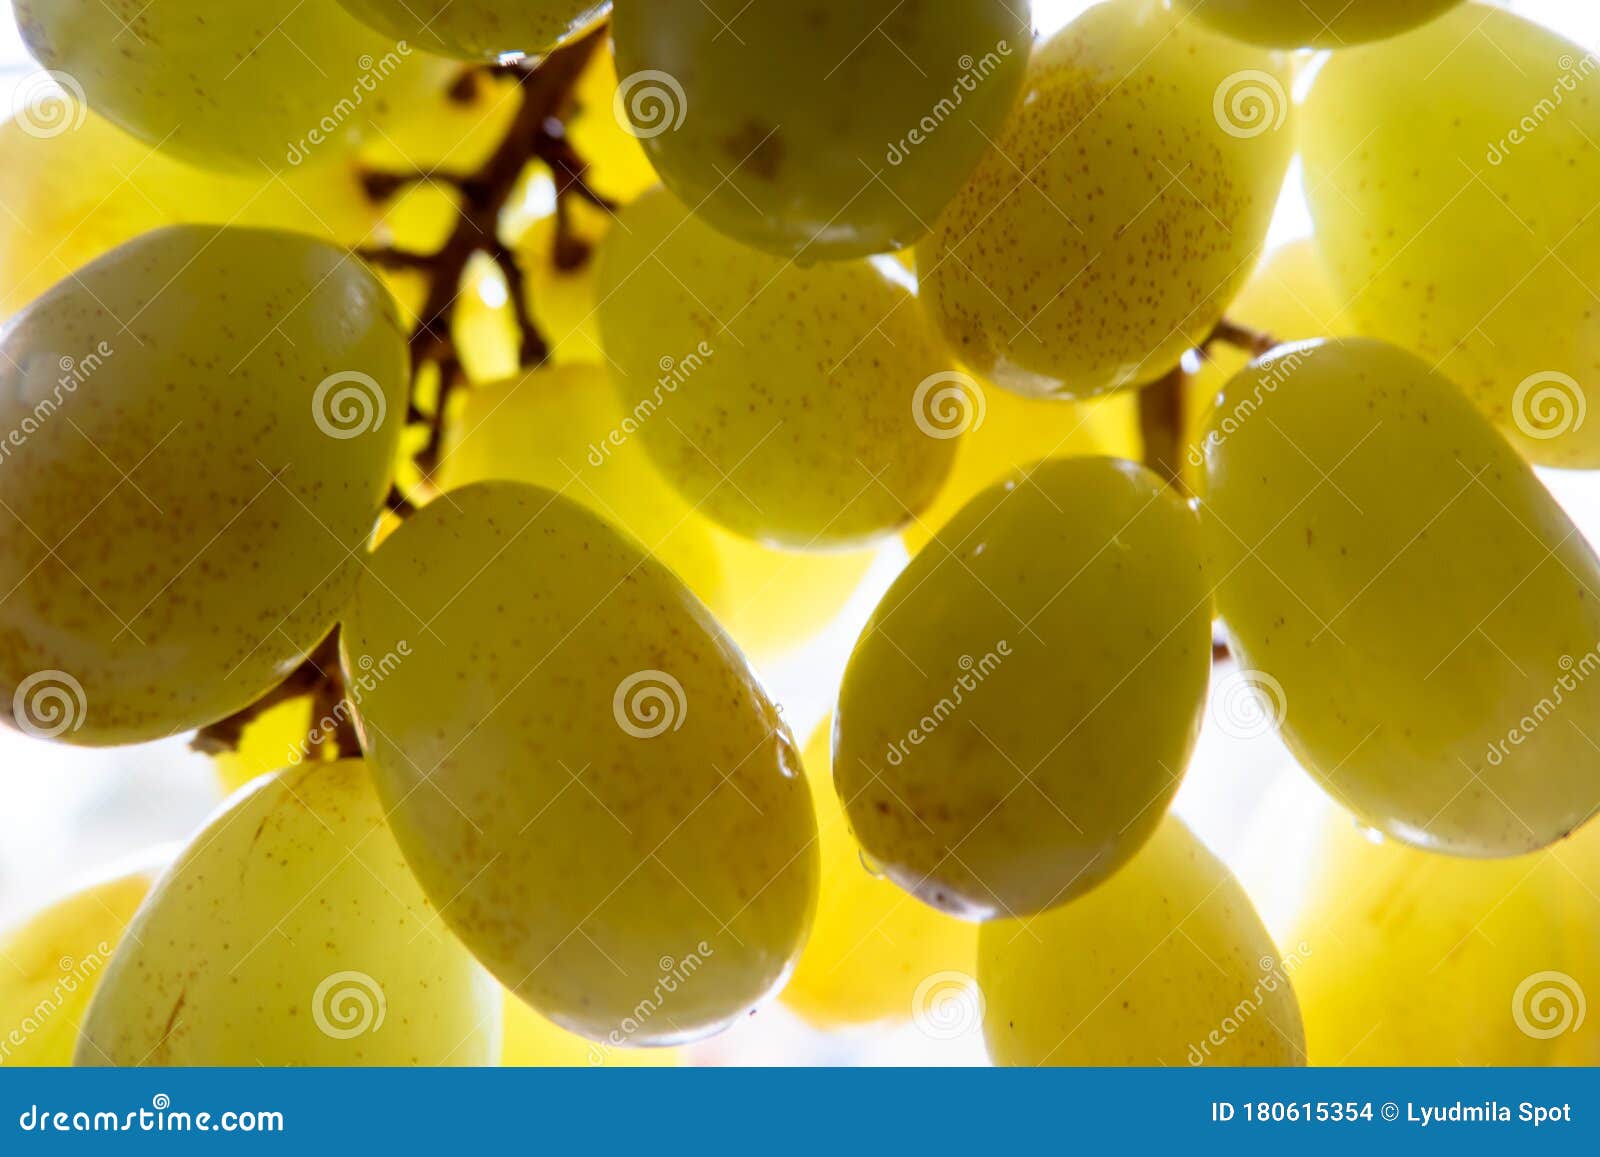 Винограда сорта винограда зеленого завтрак из свежих фруктов зрелые в лучахсветлом фоне Стоковое Фото - изображение насчитывающей хлебоуборка, цвет:180615354